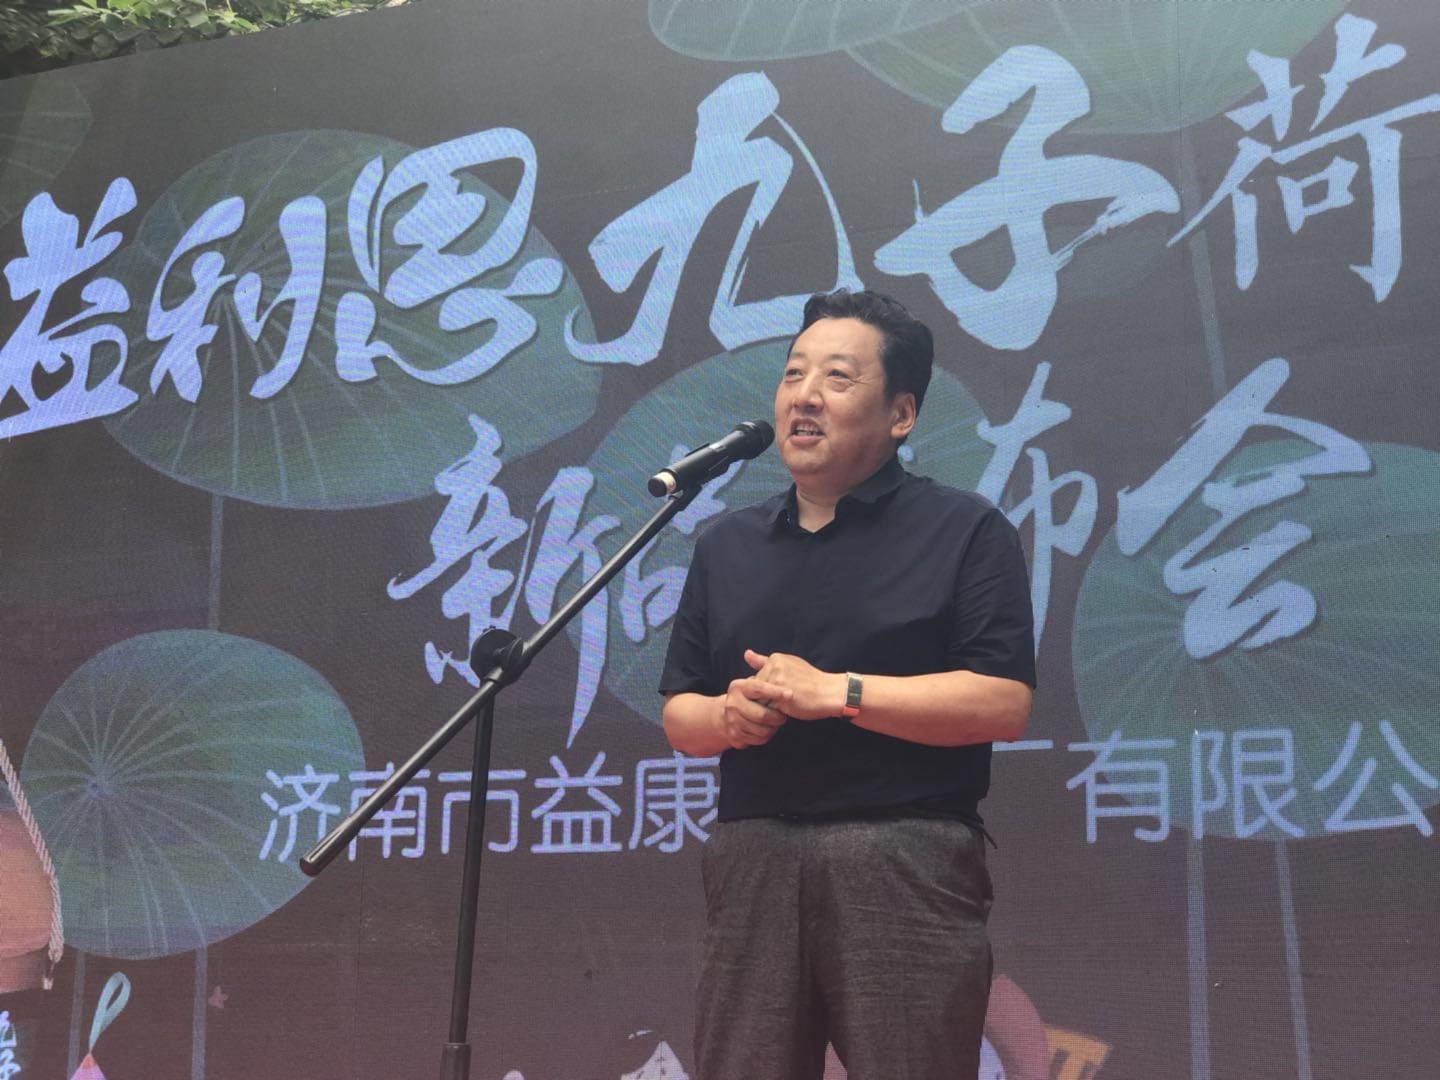 济南市食品药品监督管理局副局长武磊先生致辞